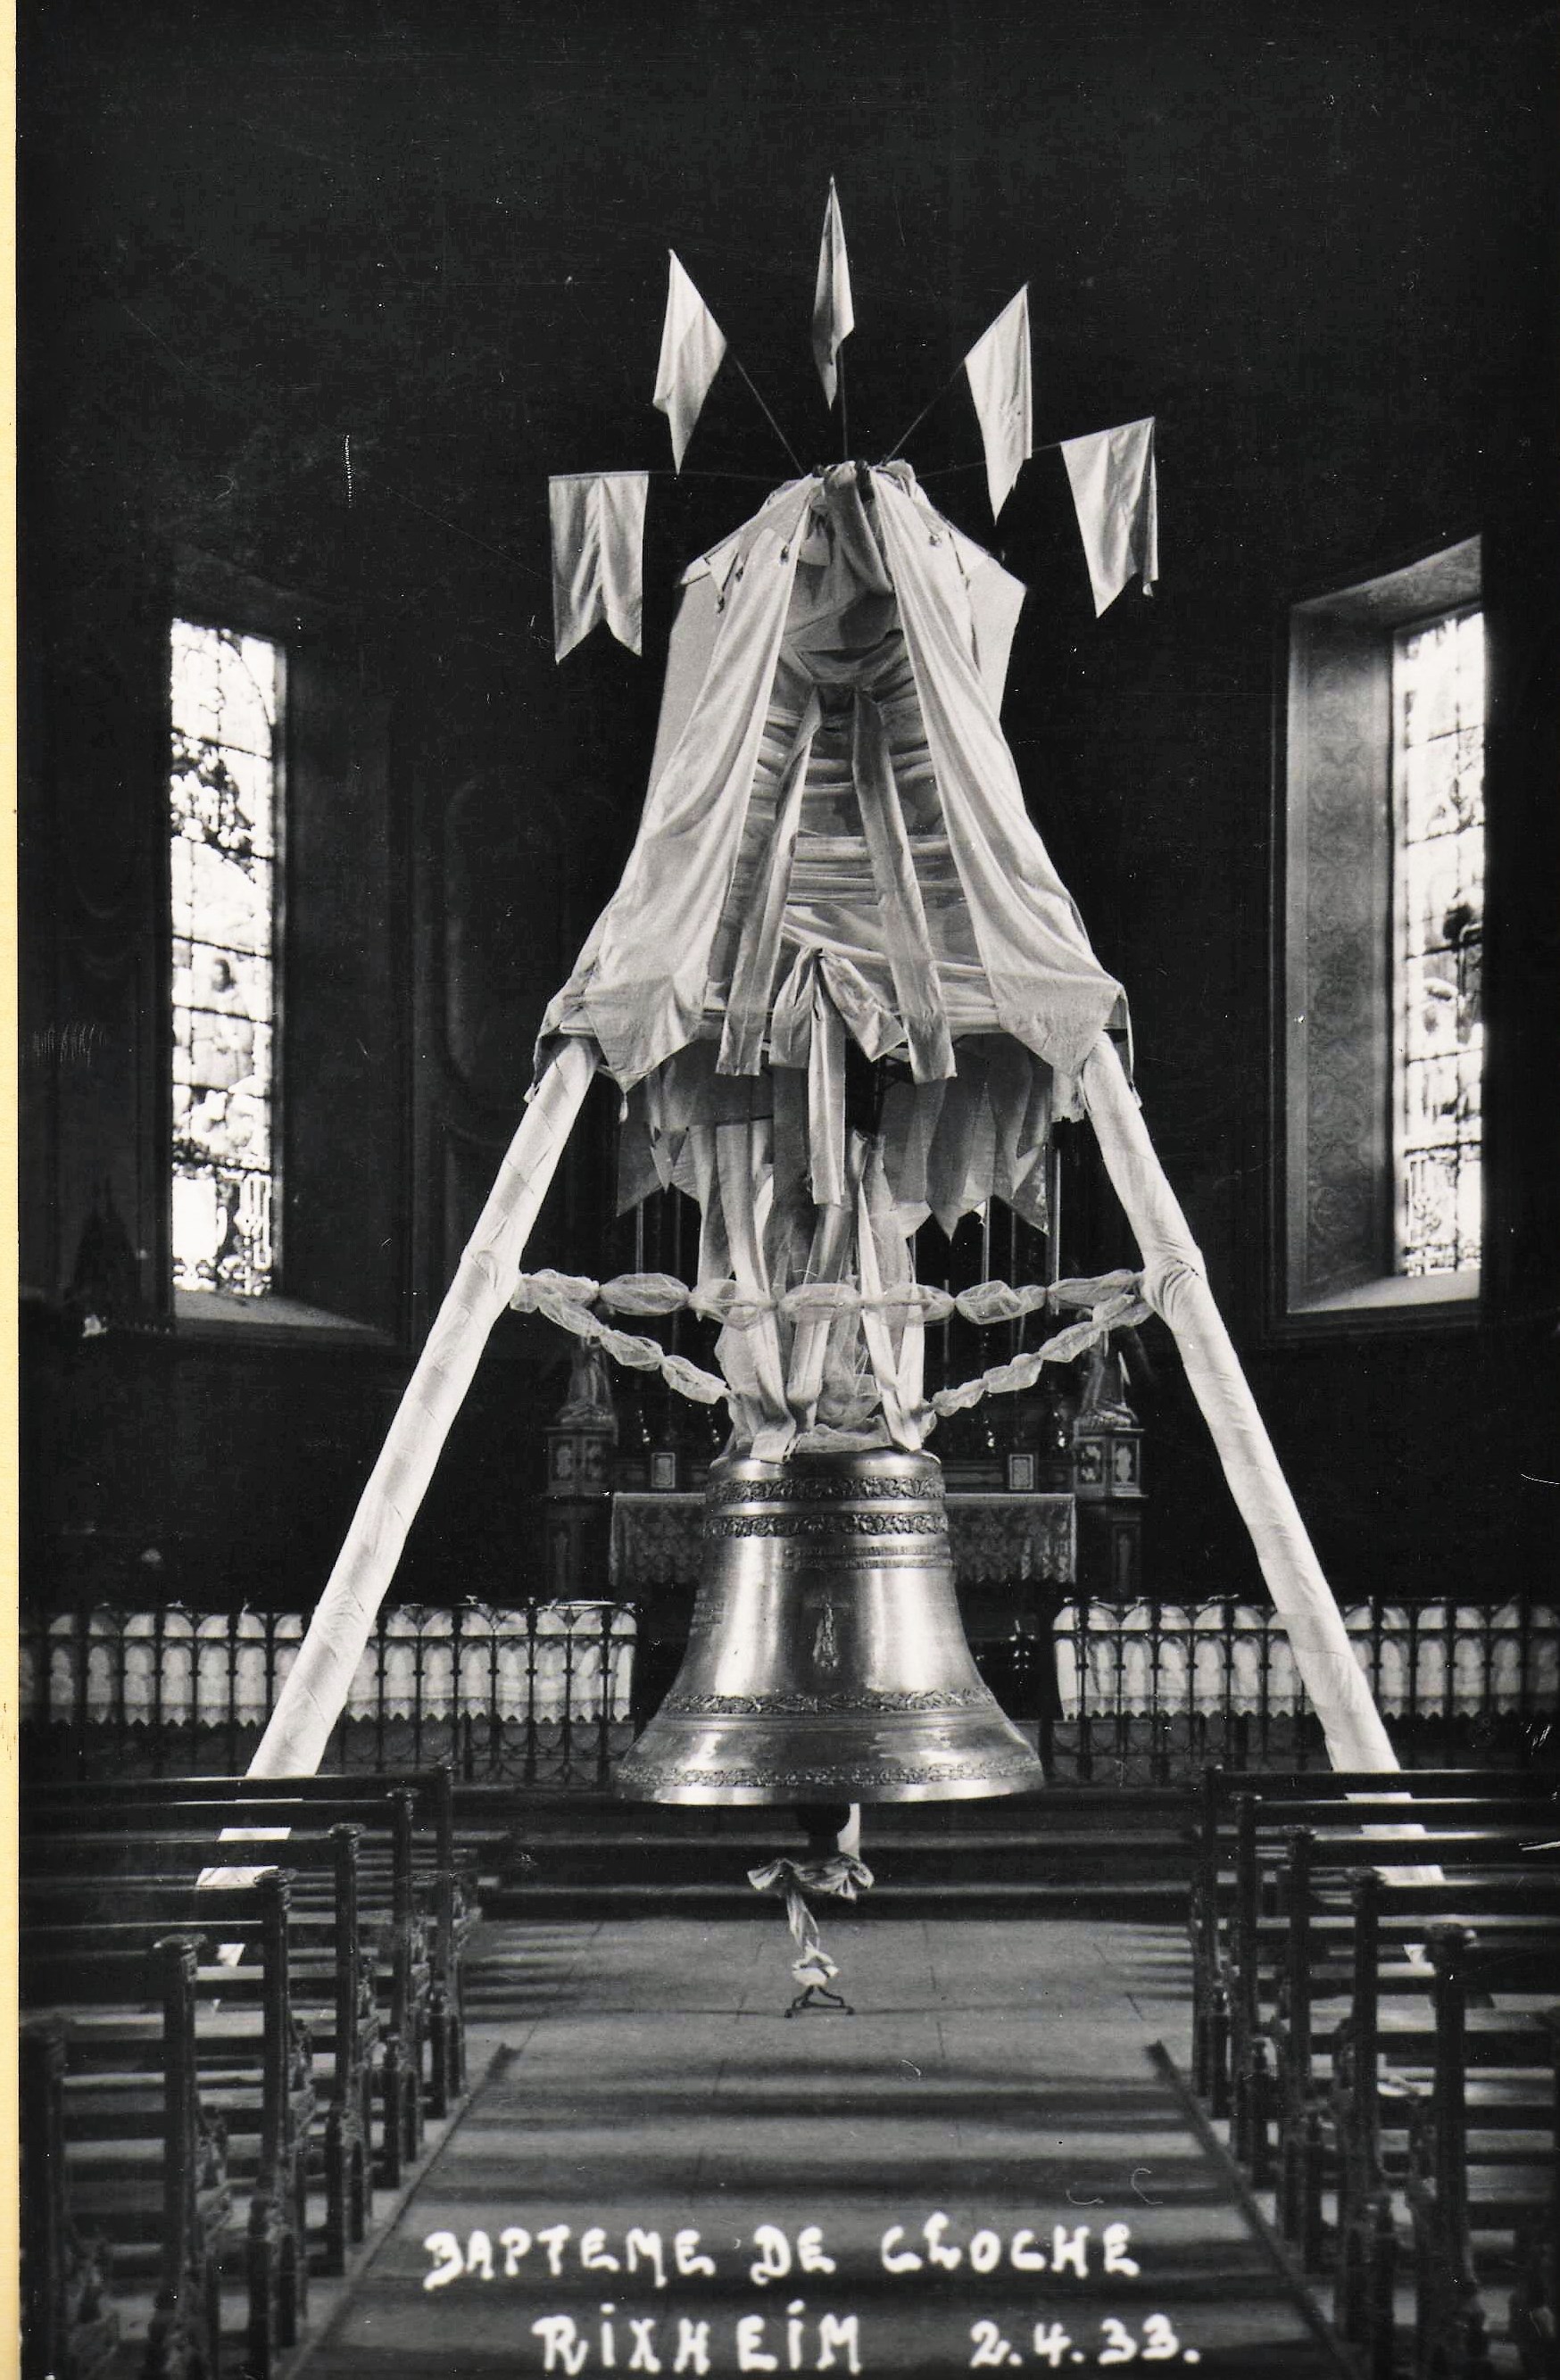 La bénédiciton de la nouvelle clcohe du Rosaire a lieu le dimanche 2 avril 1933.